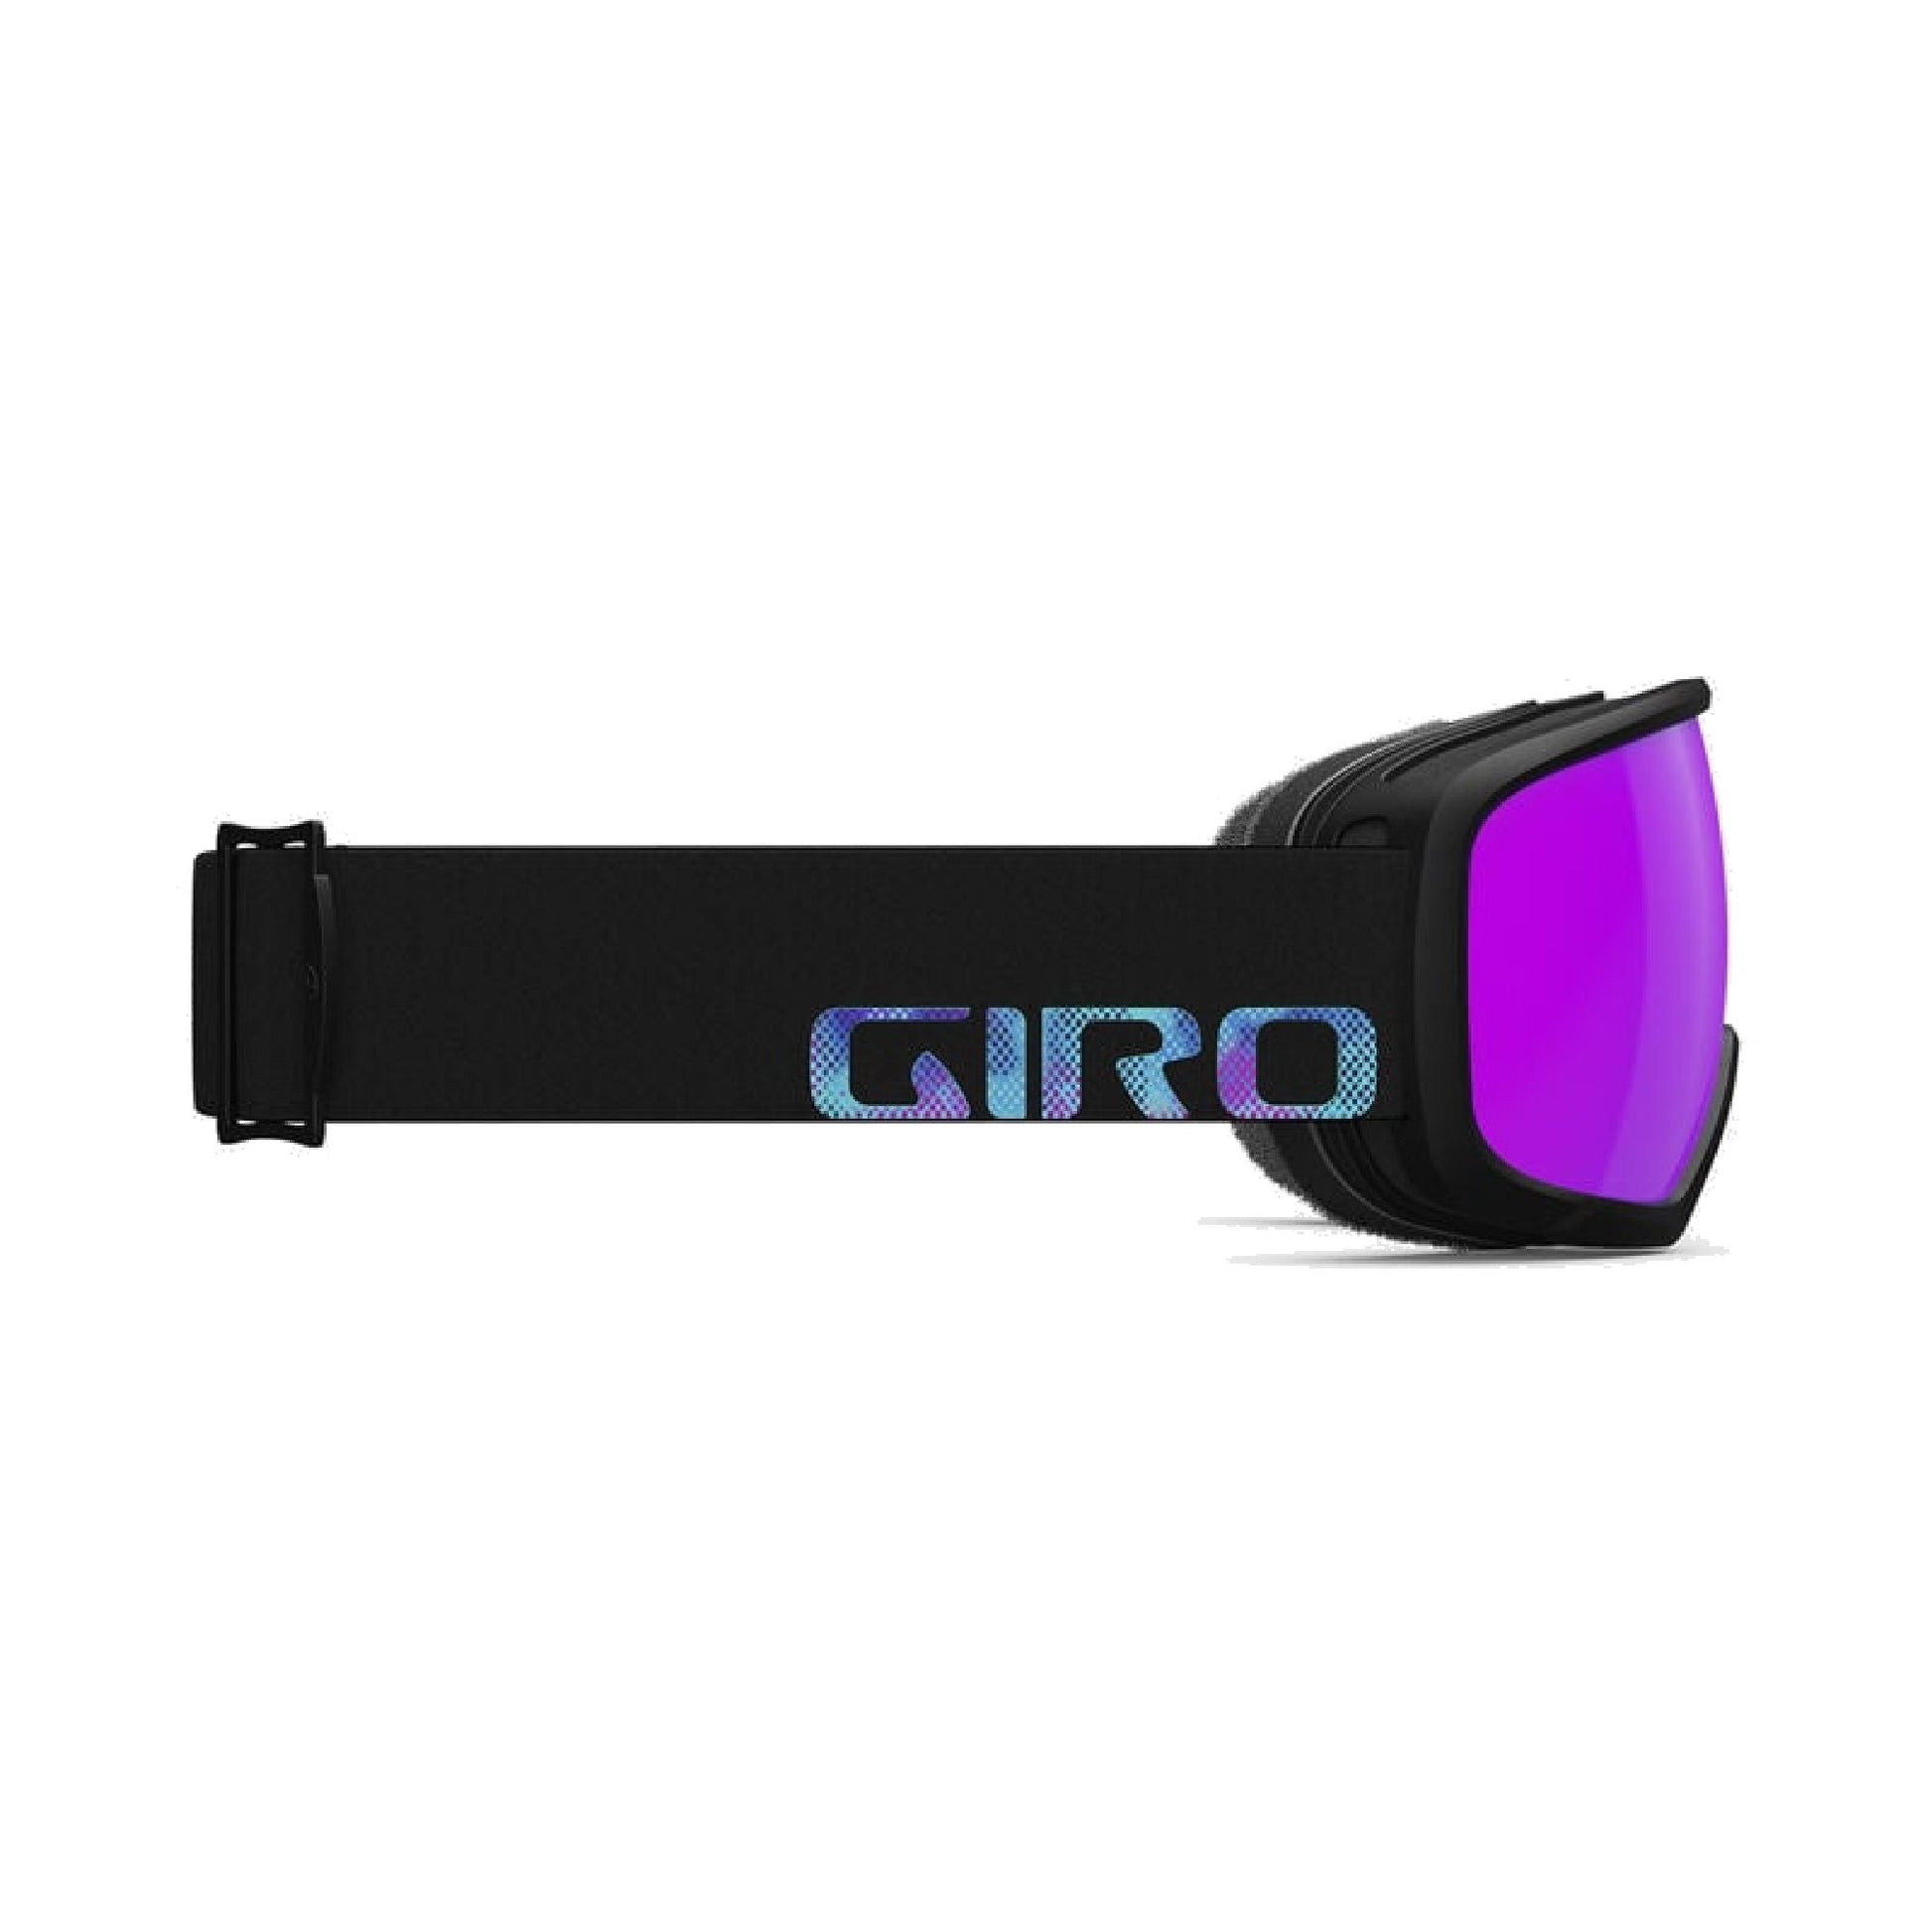 Giro Women's Millie Snow Goggles - Openbox Black Chroma Dot Vivid Pink - Giro Snow Snow Goggles